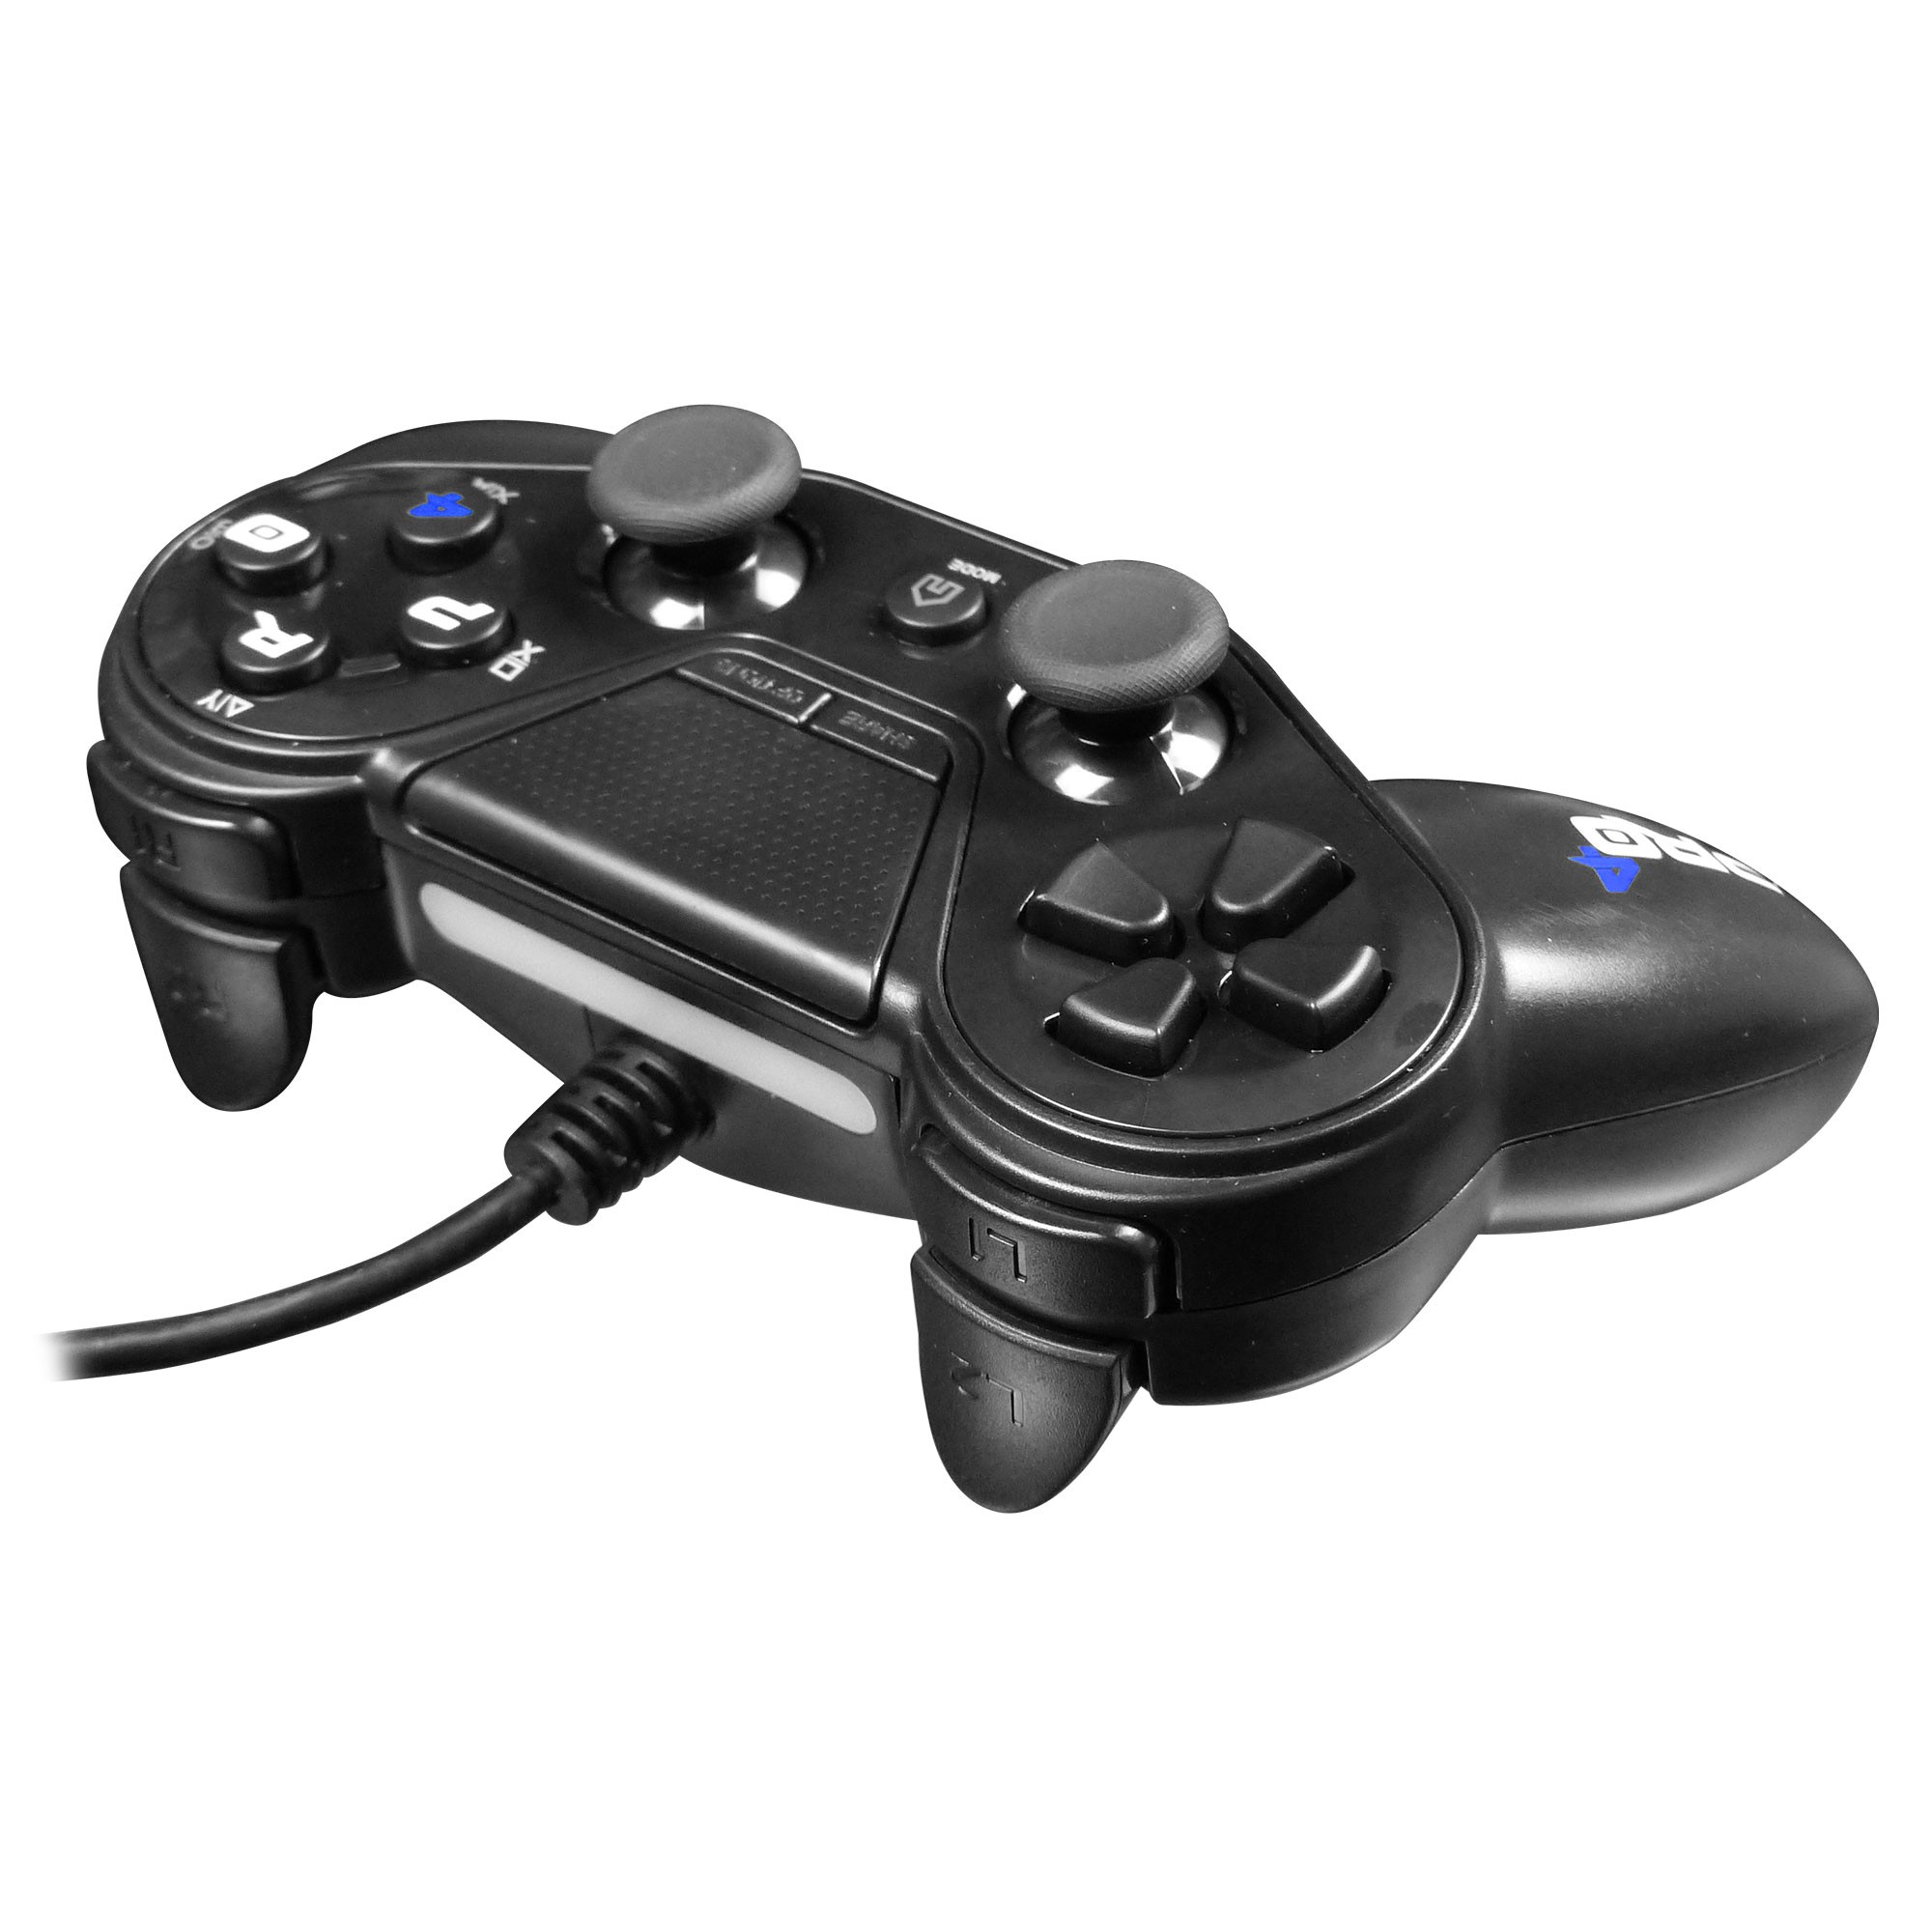 Manette pour PS4, USB Manette Filaire Fil pour PlayStation4/Pro